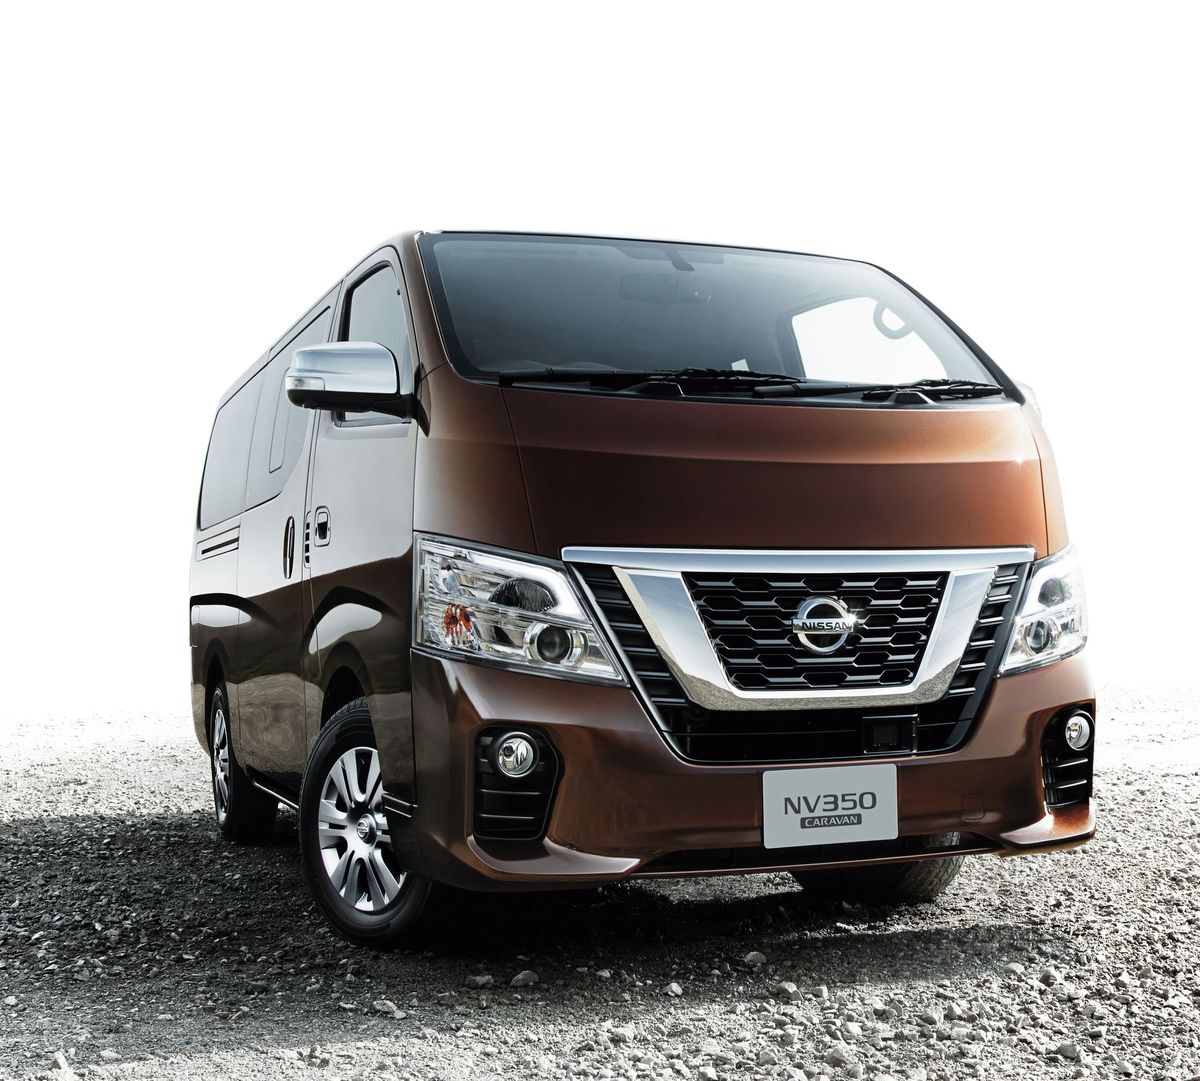 Nissan NV350 Caravan 2017. Carrosserie, extérieur. Monospace, 1 génération, restyling